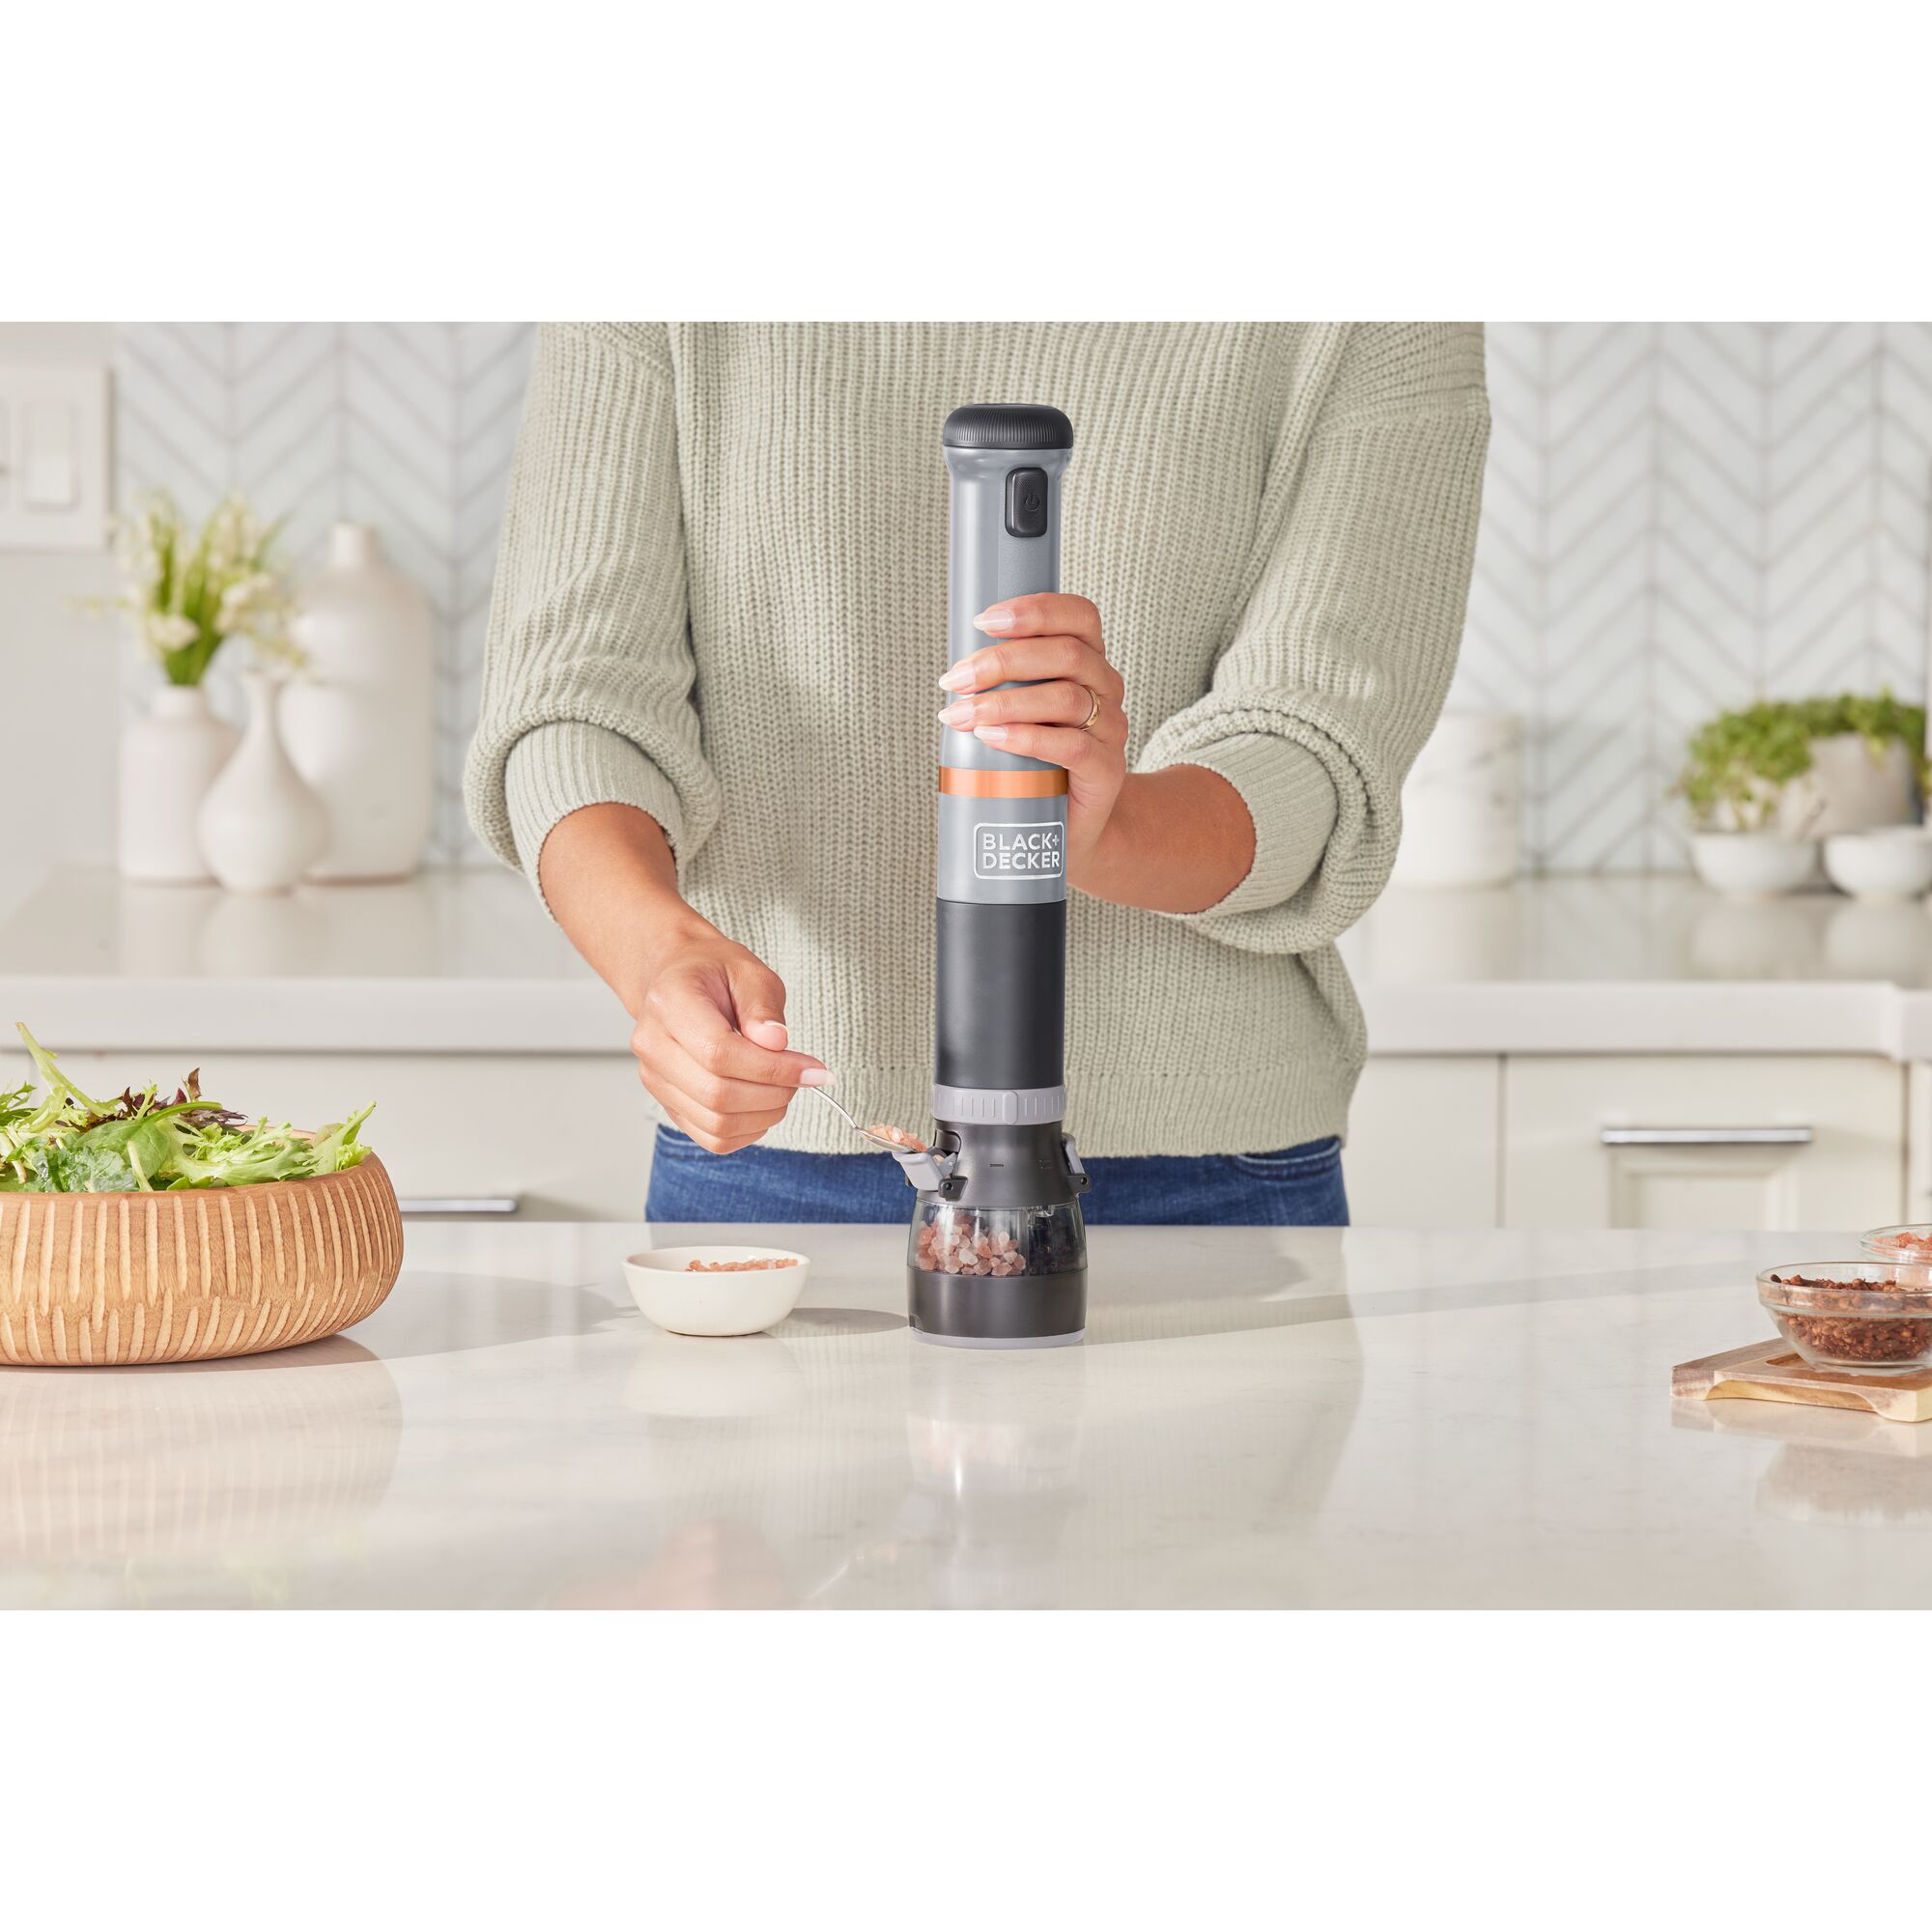 Talent adding salt crystals to the grey BLACK+DECKER kitchen wand spice grinder attachment